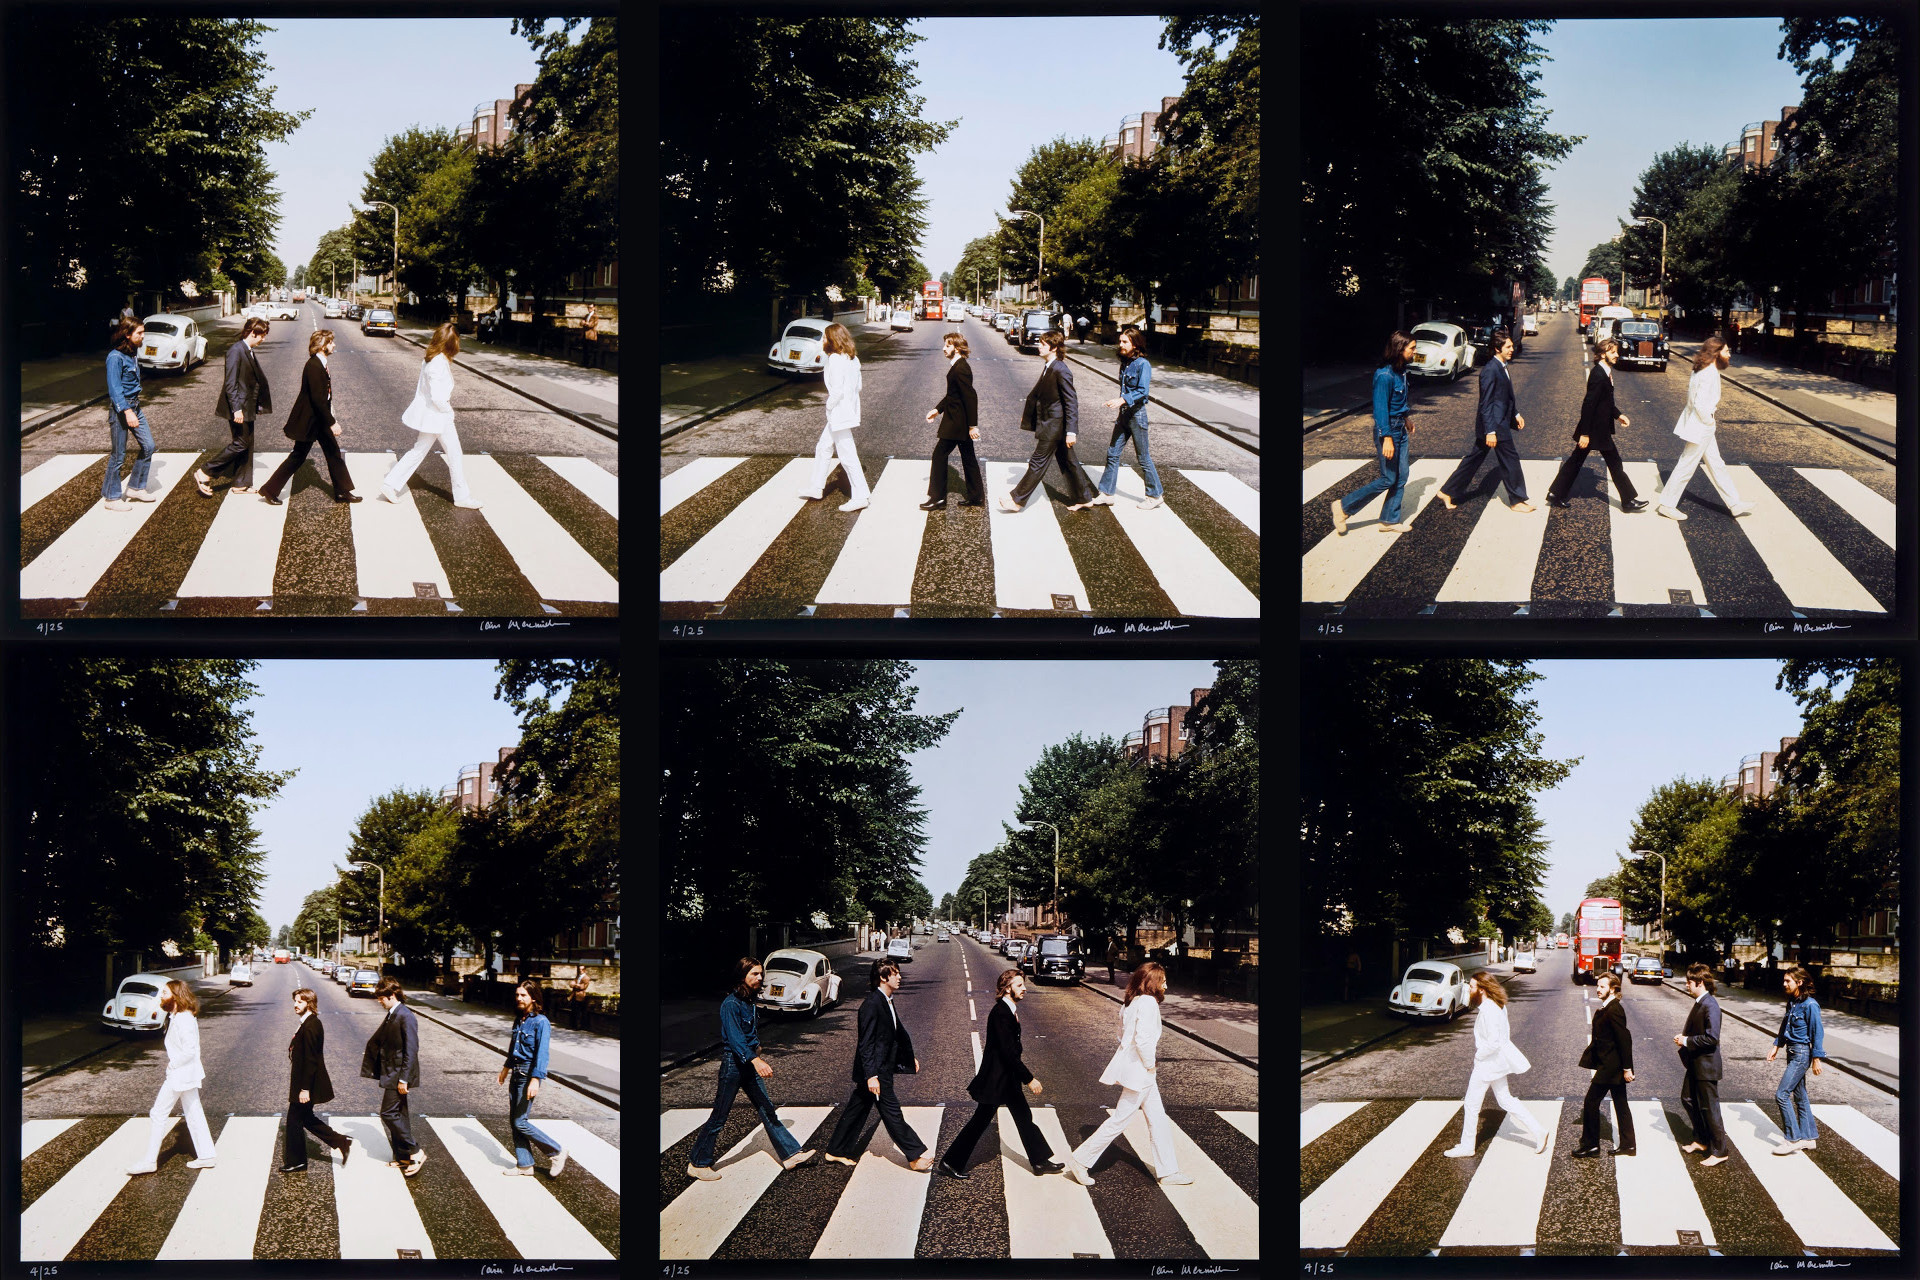 The Beatles Abbey Road Album Cover Papel de parede Abbey Road foto  compartilhado por Shelli18  Português de partilha de imagens imagens